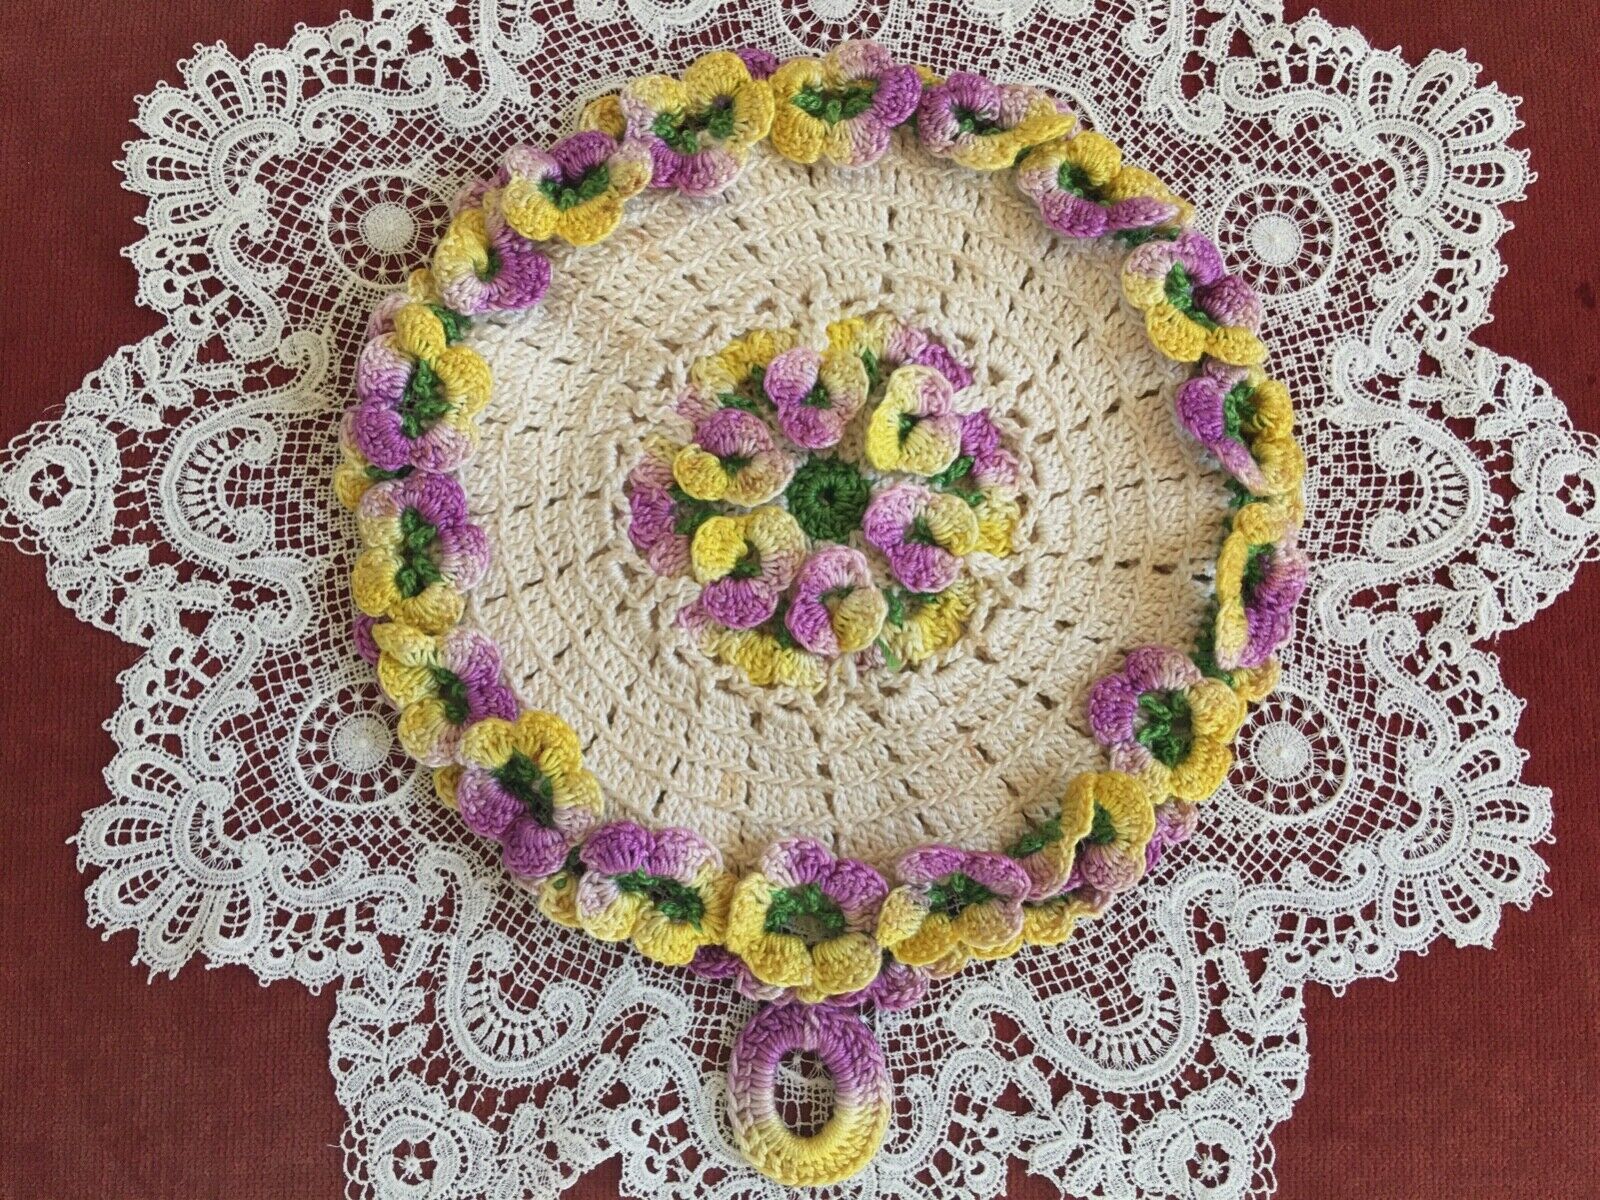 Antique Vintage Lace- HM VINTAGE CROCHET LACE POTHOLDER *DIMENSIONAL FLOWERS